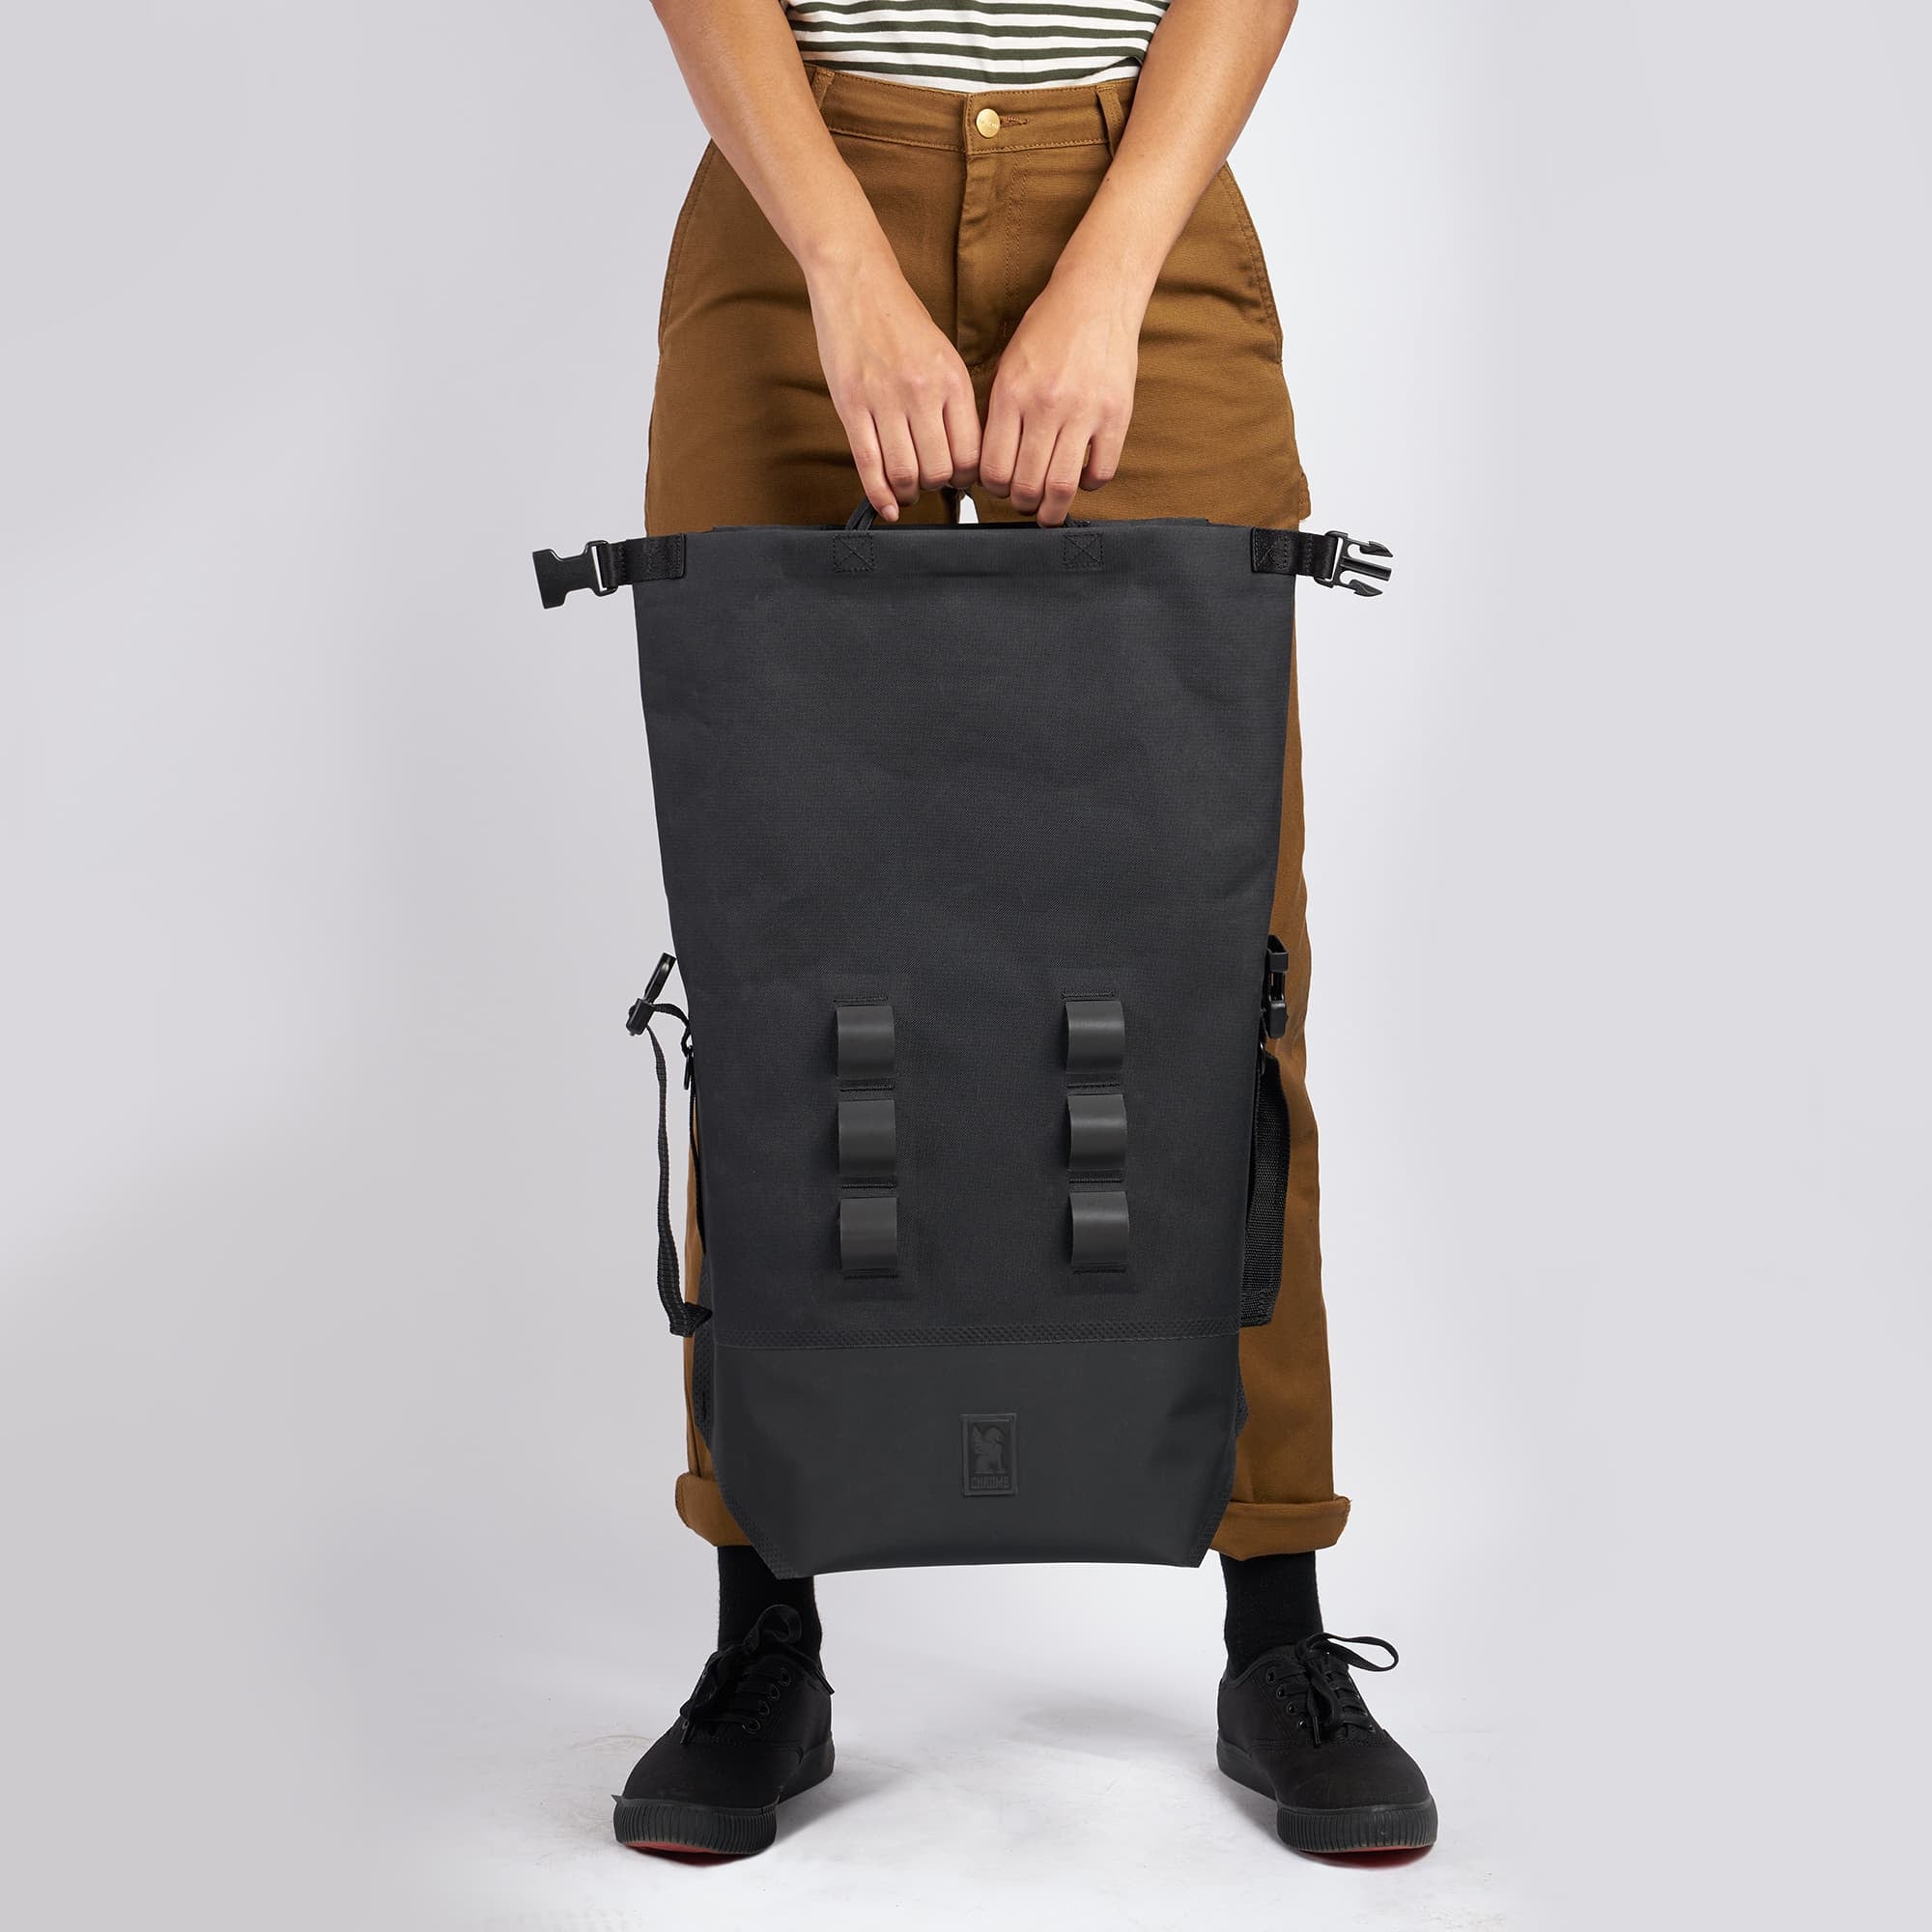 Waterproof 20L backpack in black top handles held by a woman  #color_black